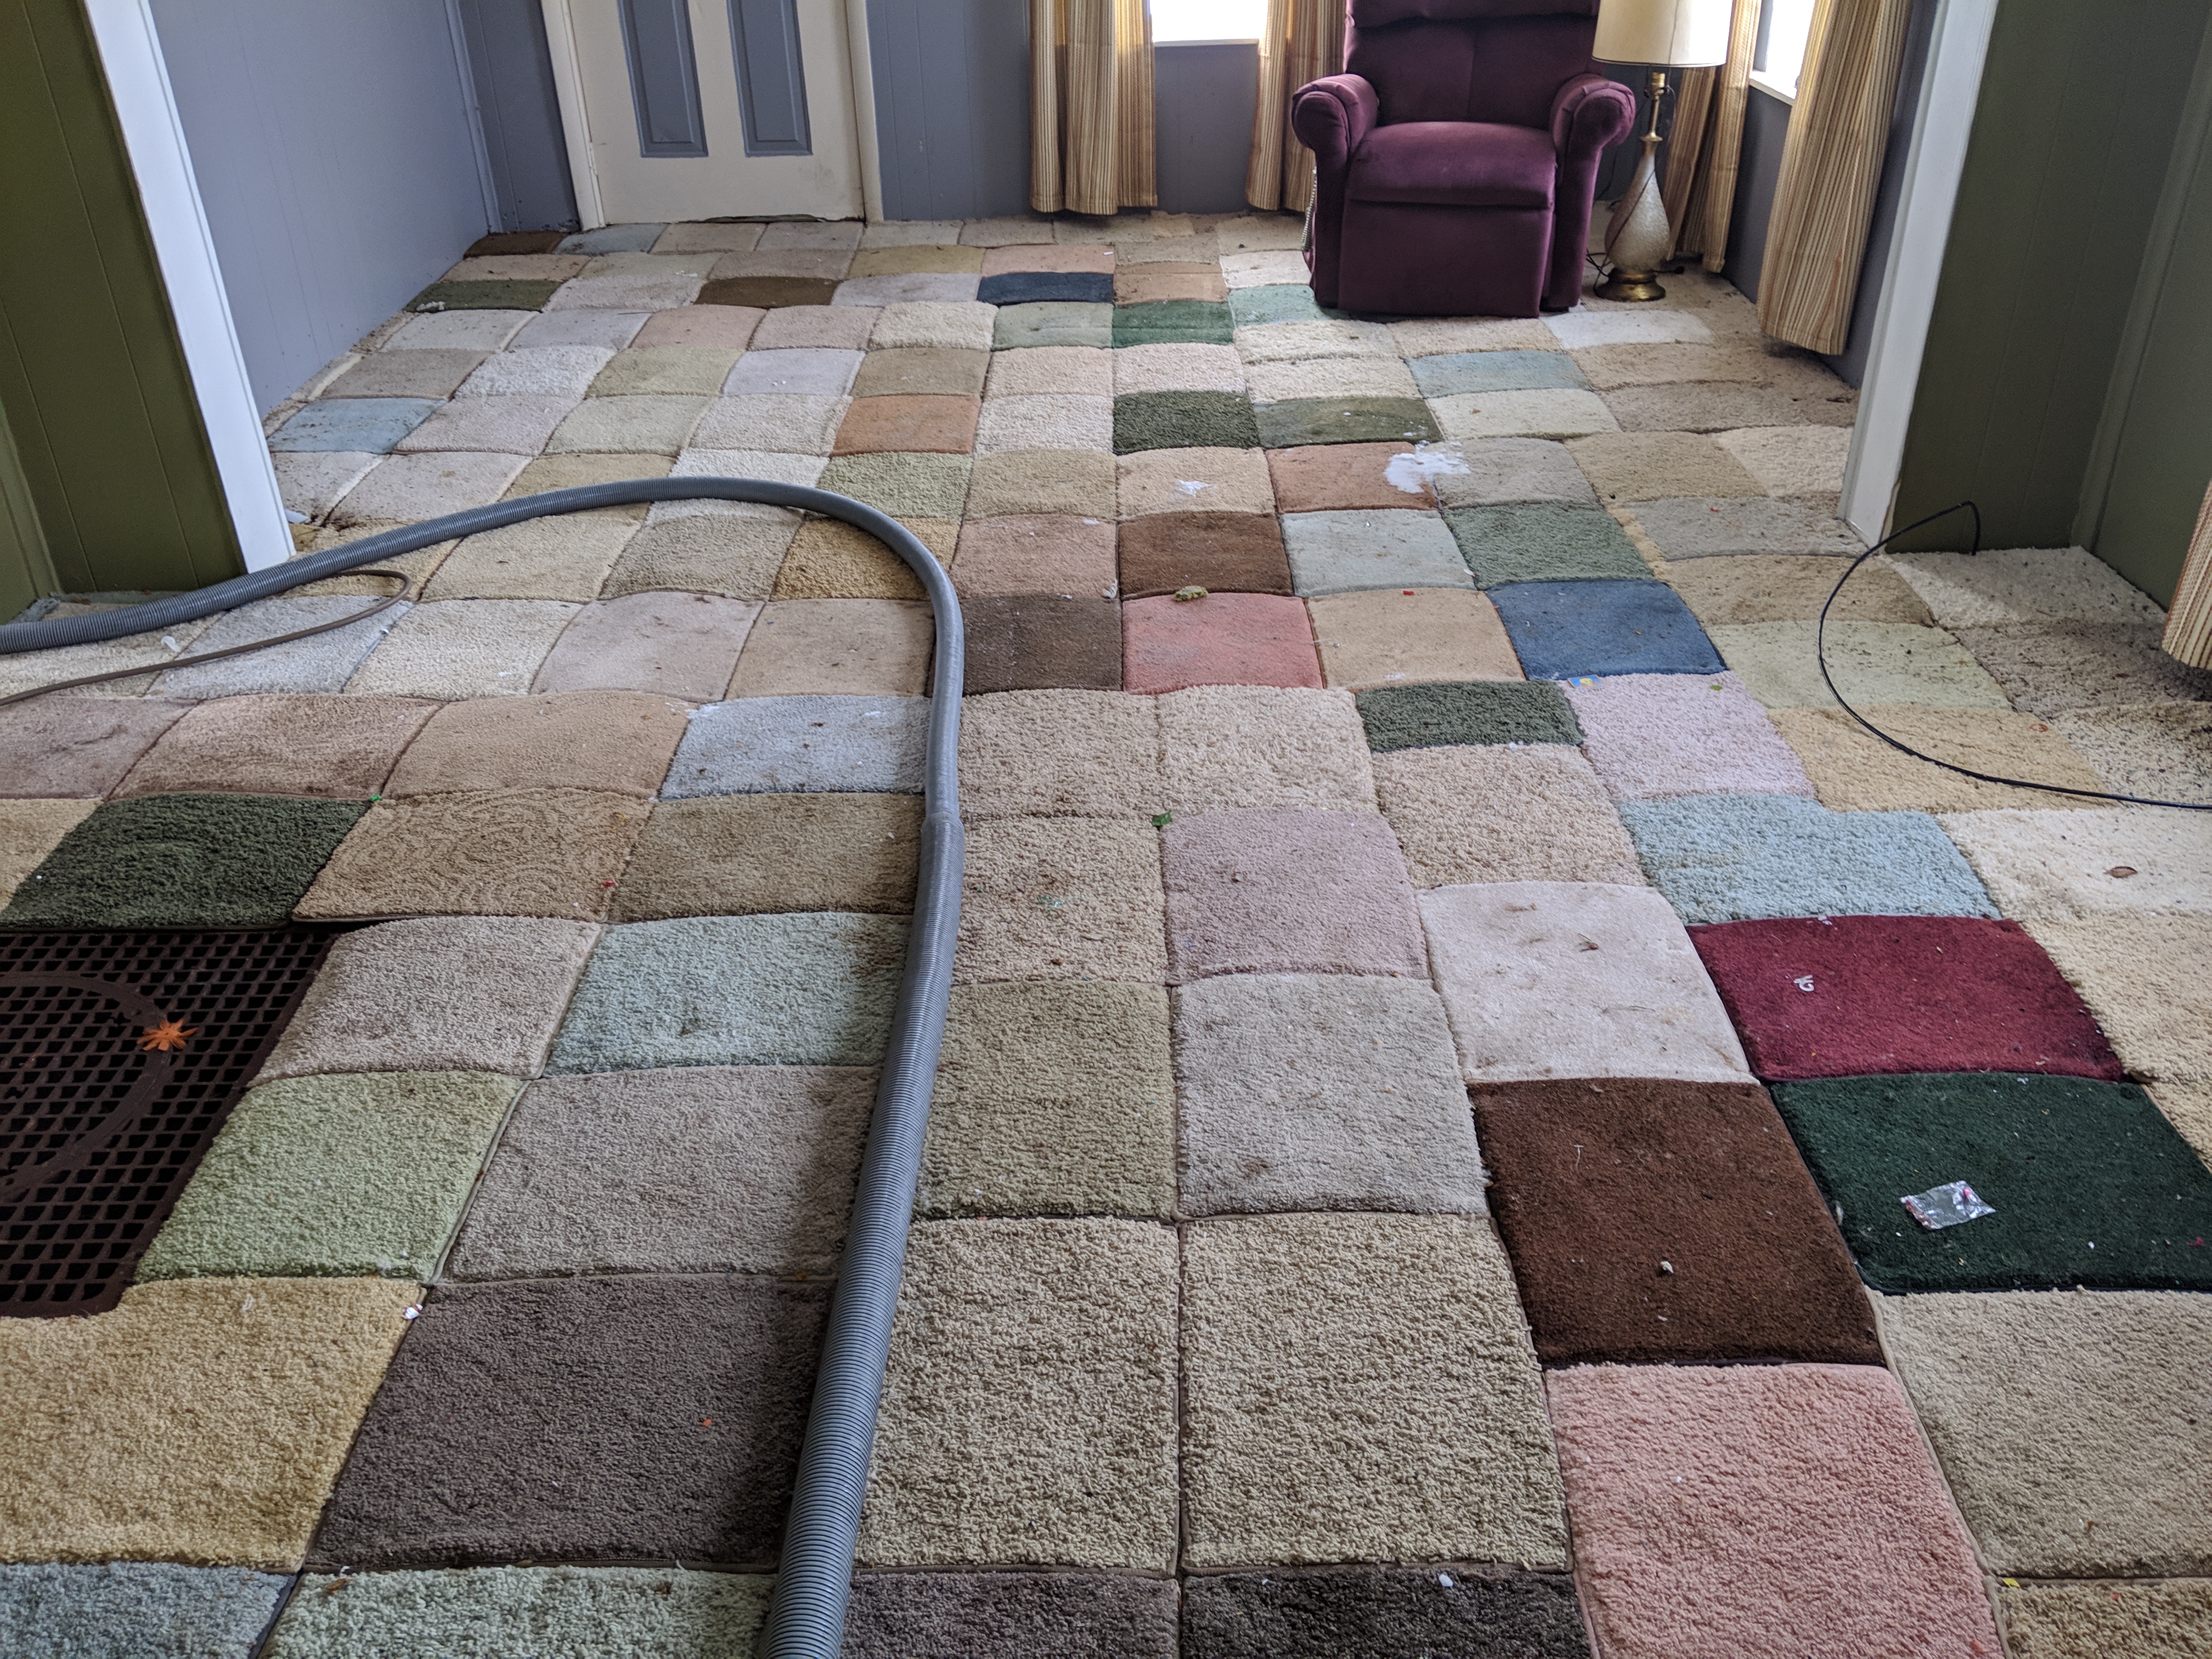 https://mikeysboard.com/threads/crazy-carpet-tiles.291736/